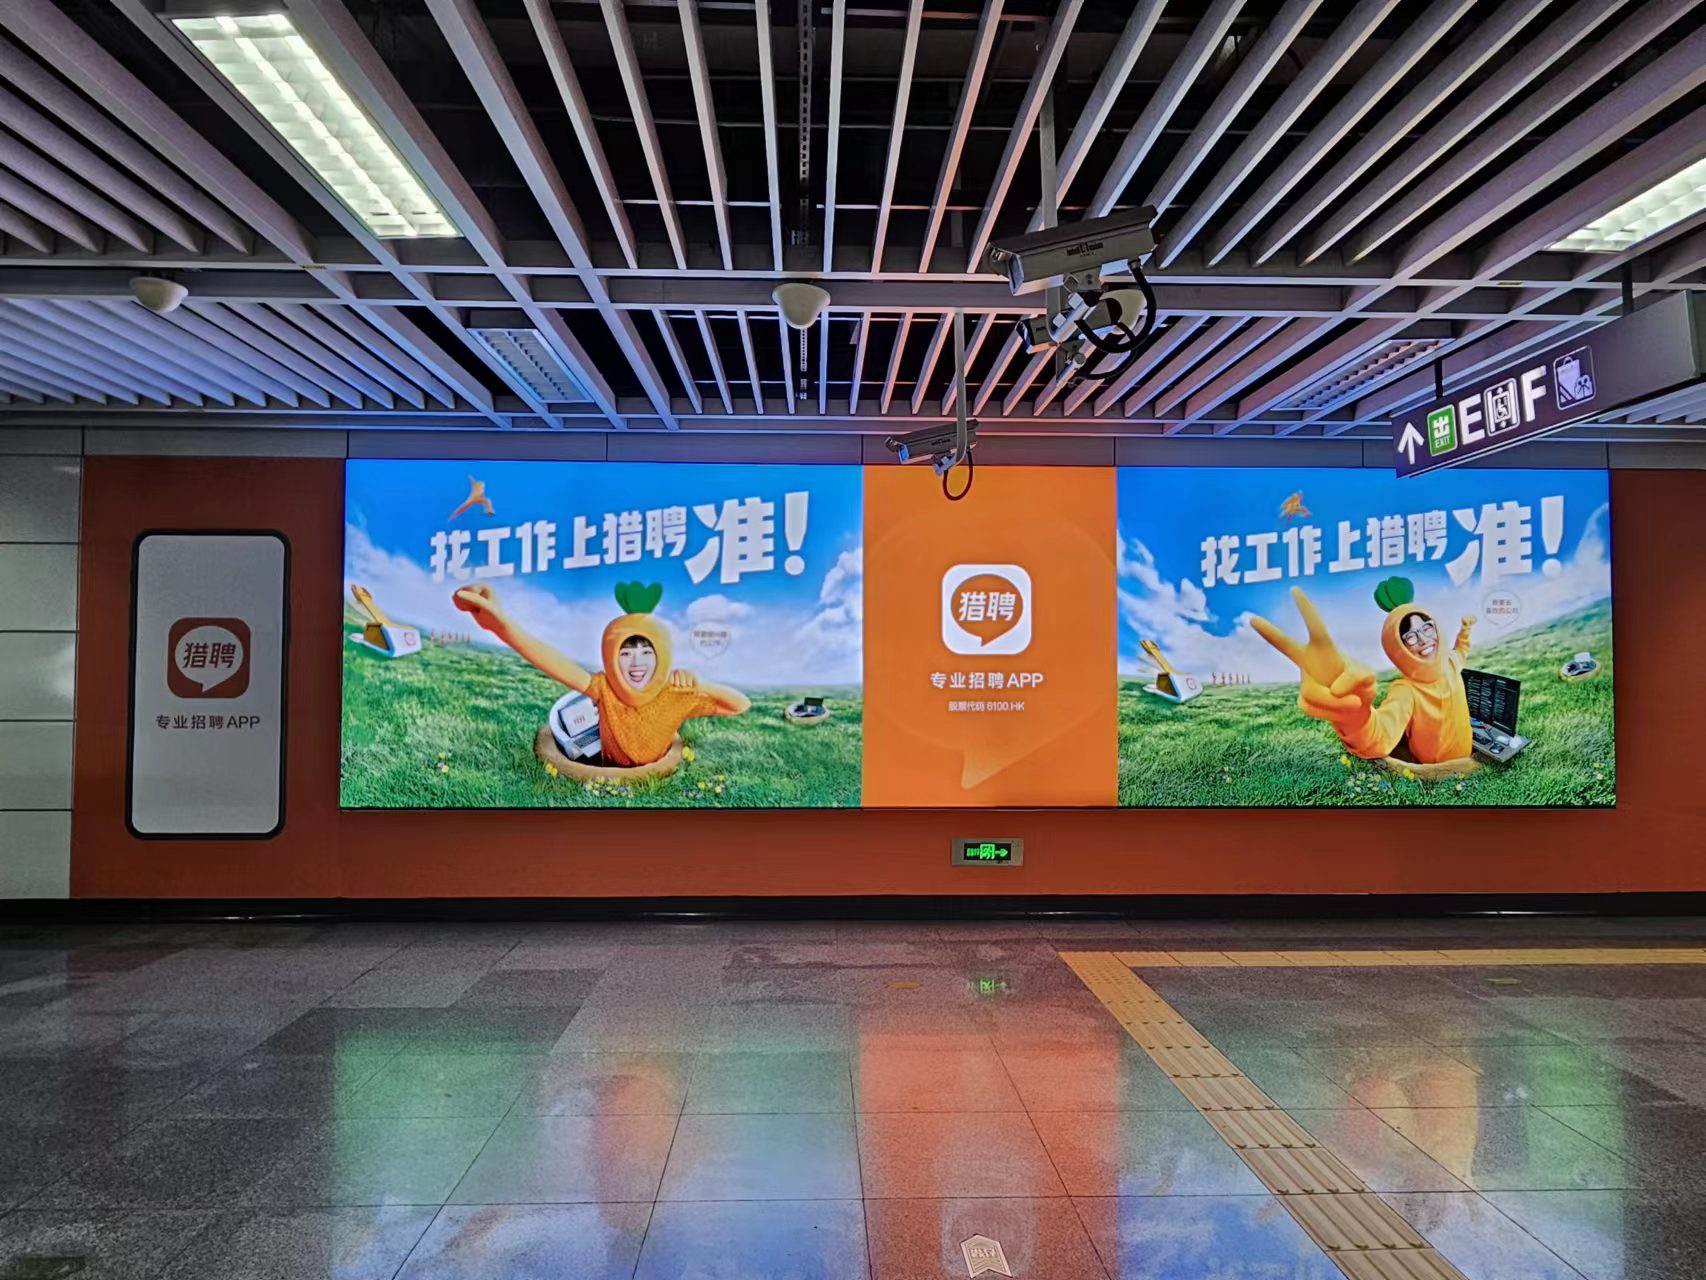 深圳地铁广告公司有何发展前景